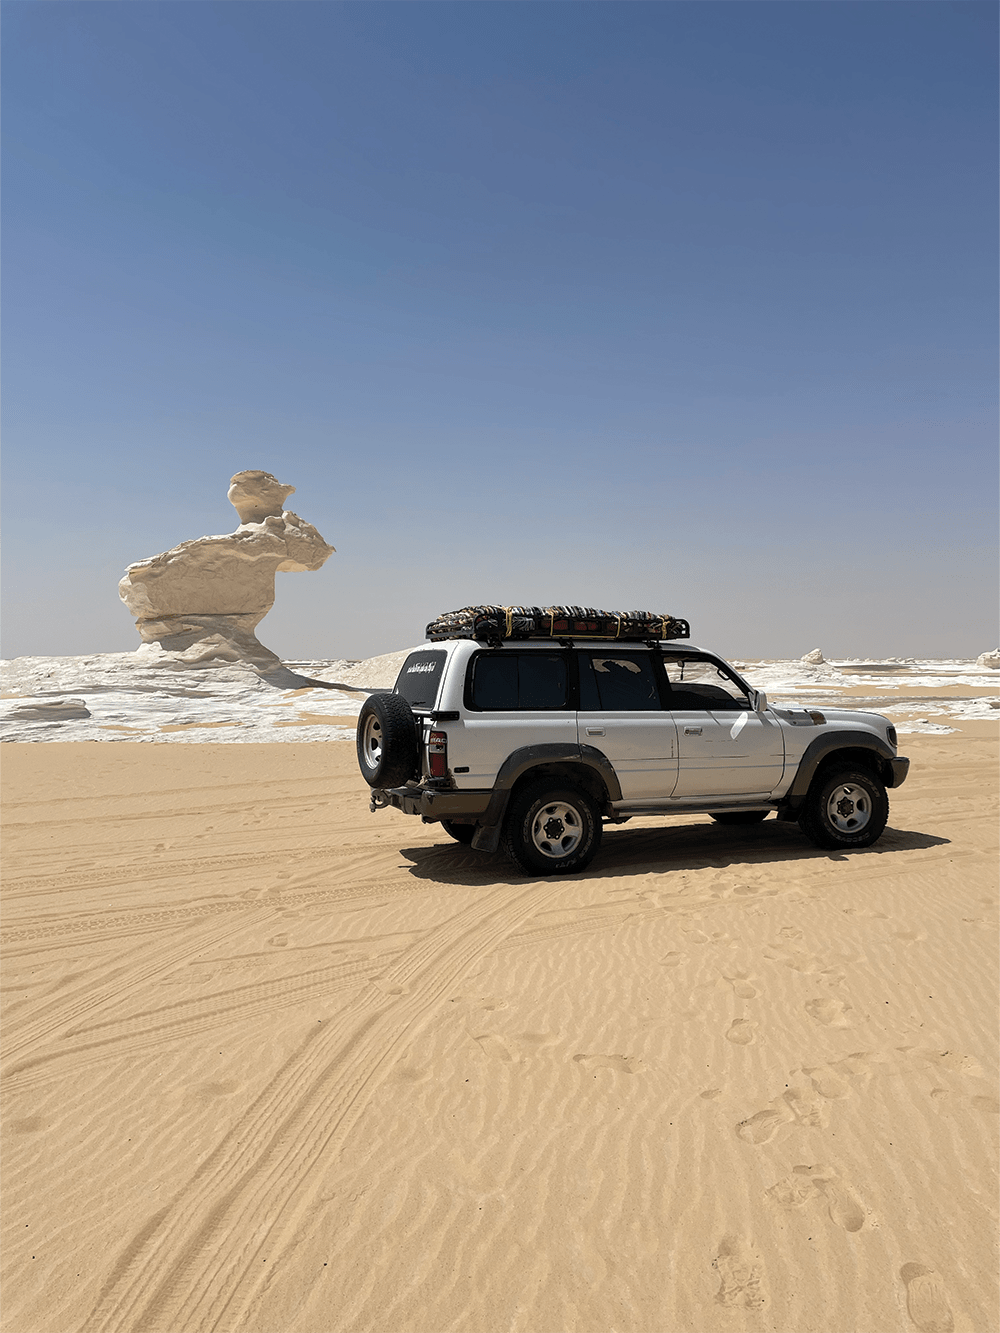 Egyptian Sahara, Toyota 4x4 in front of white desert.